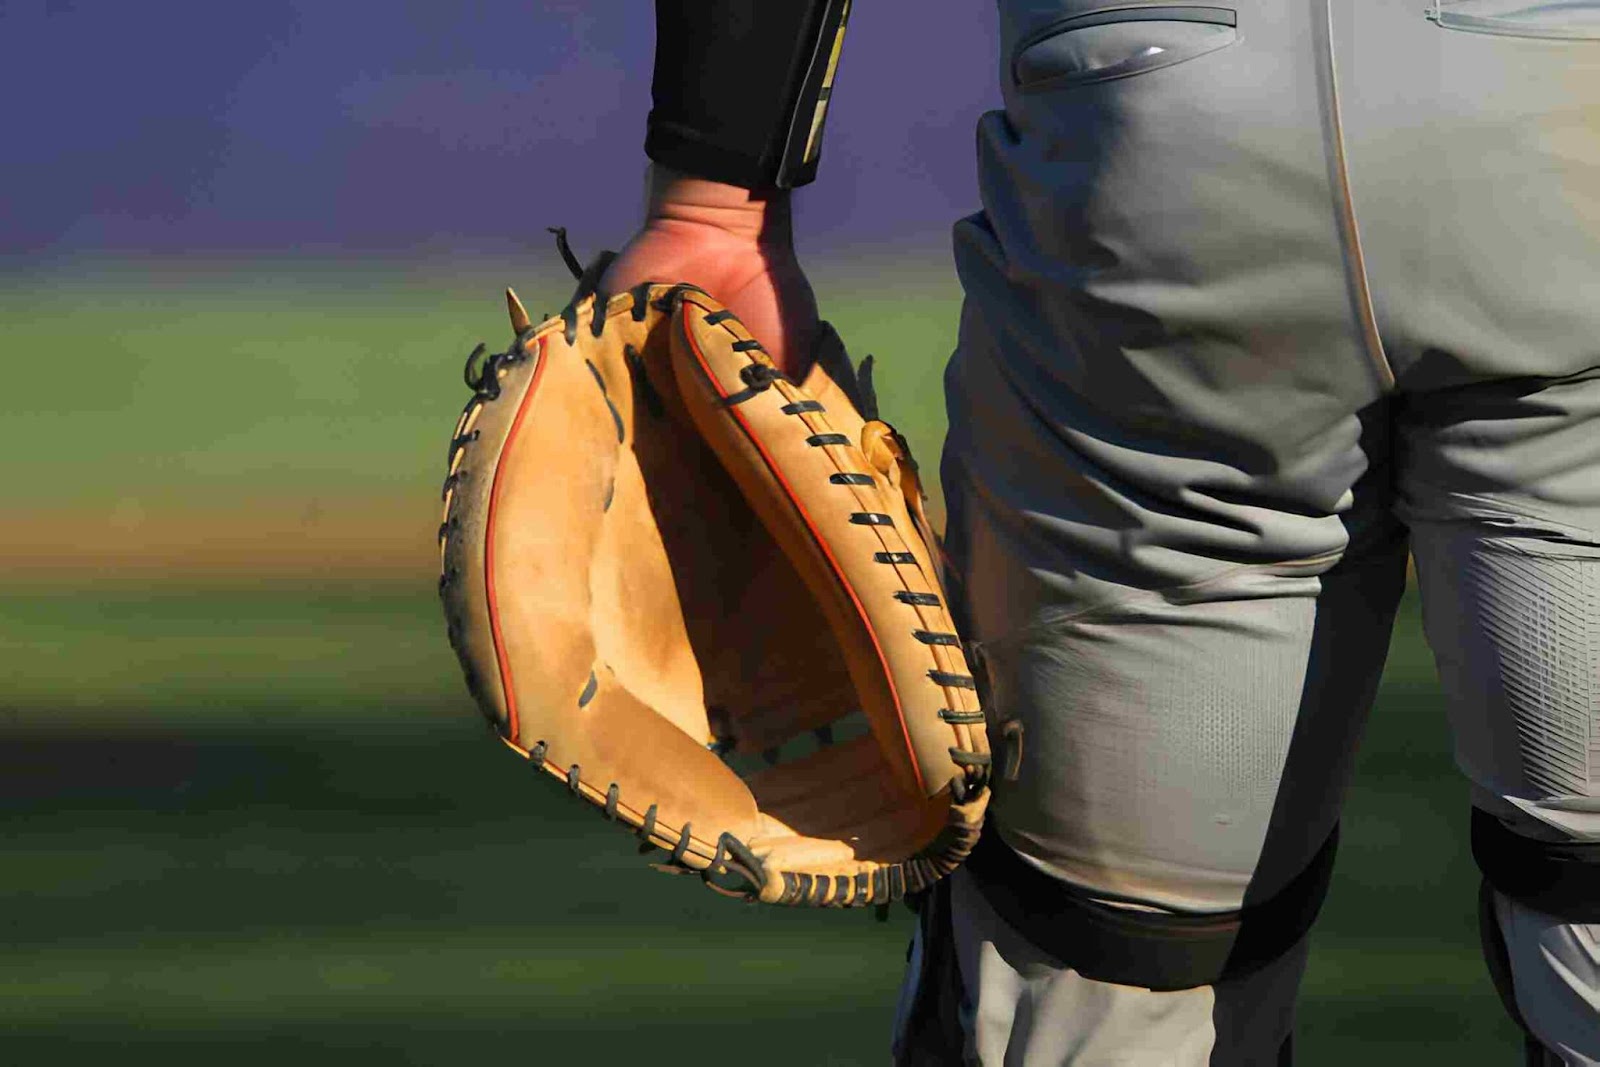 pitcher glove